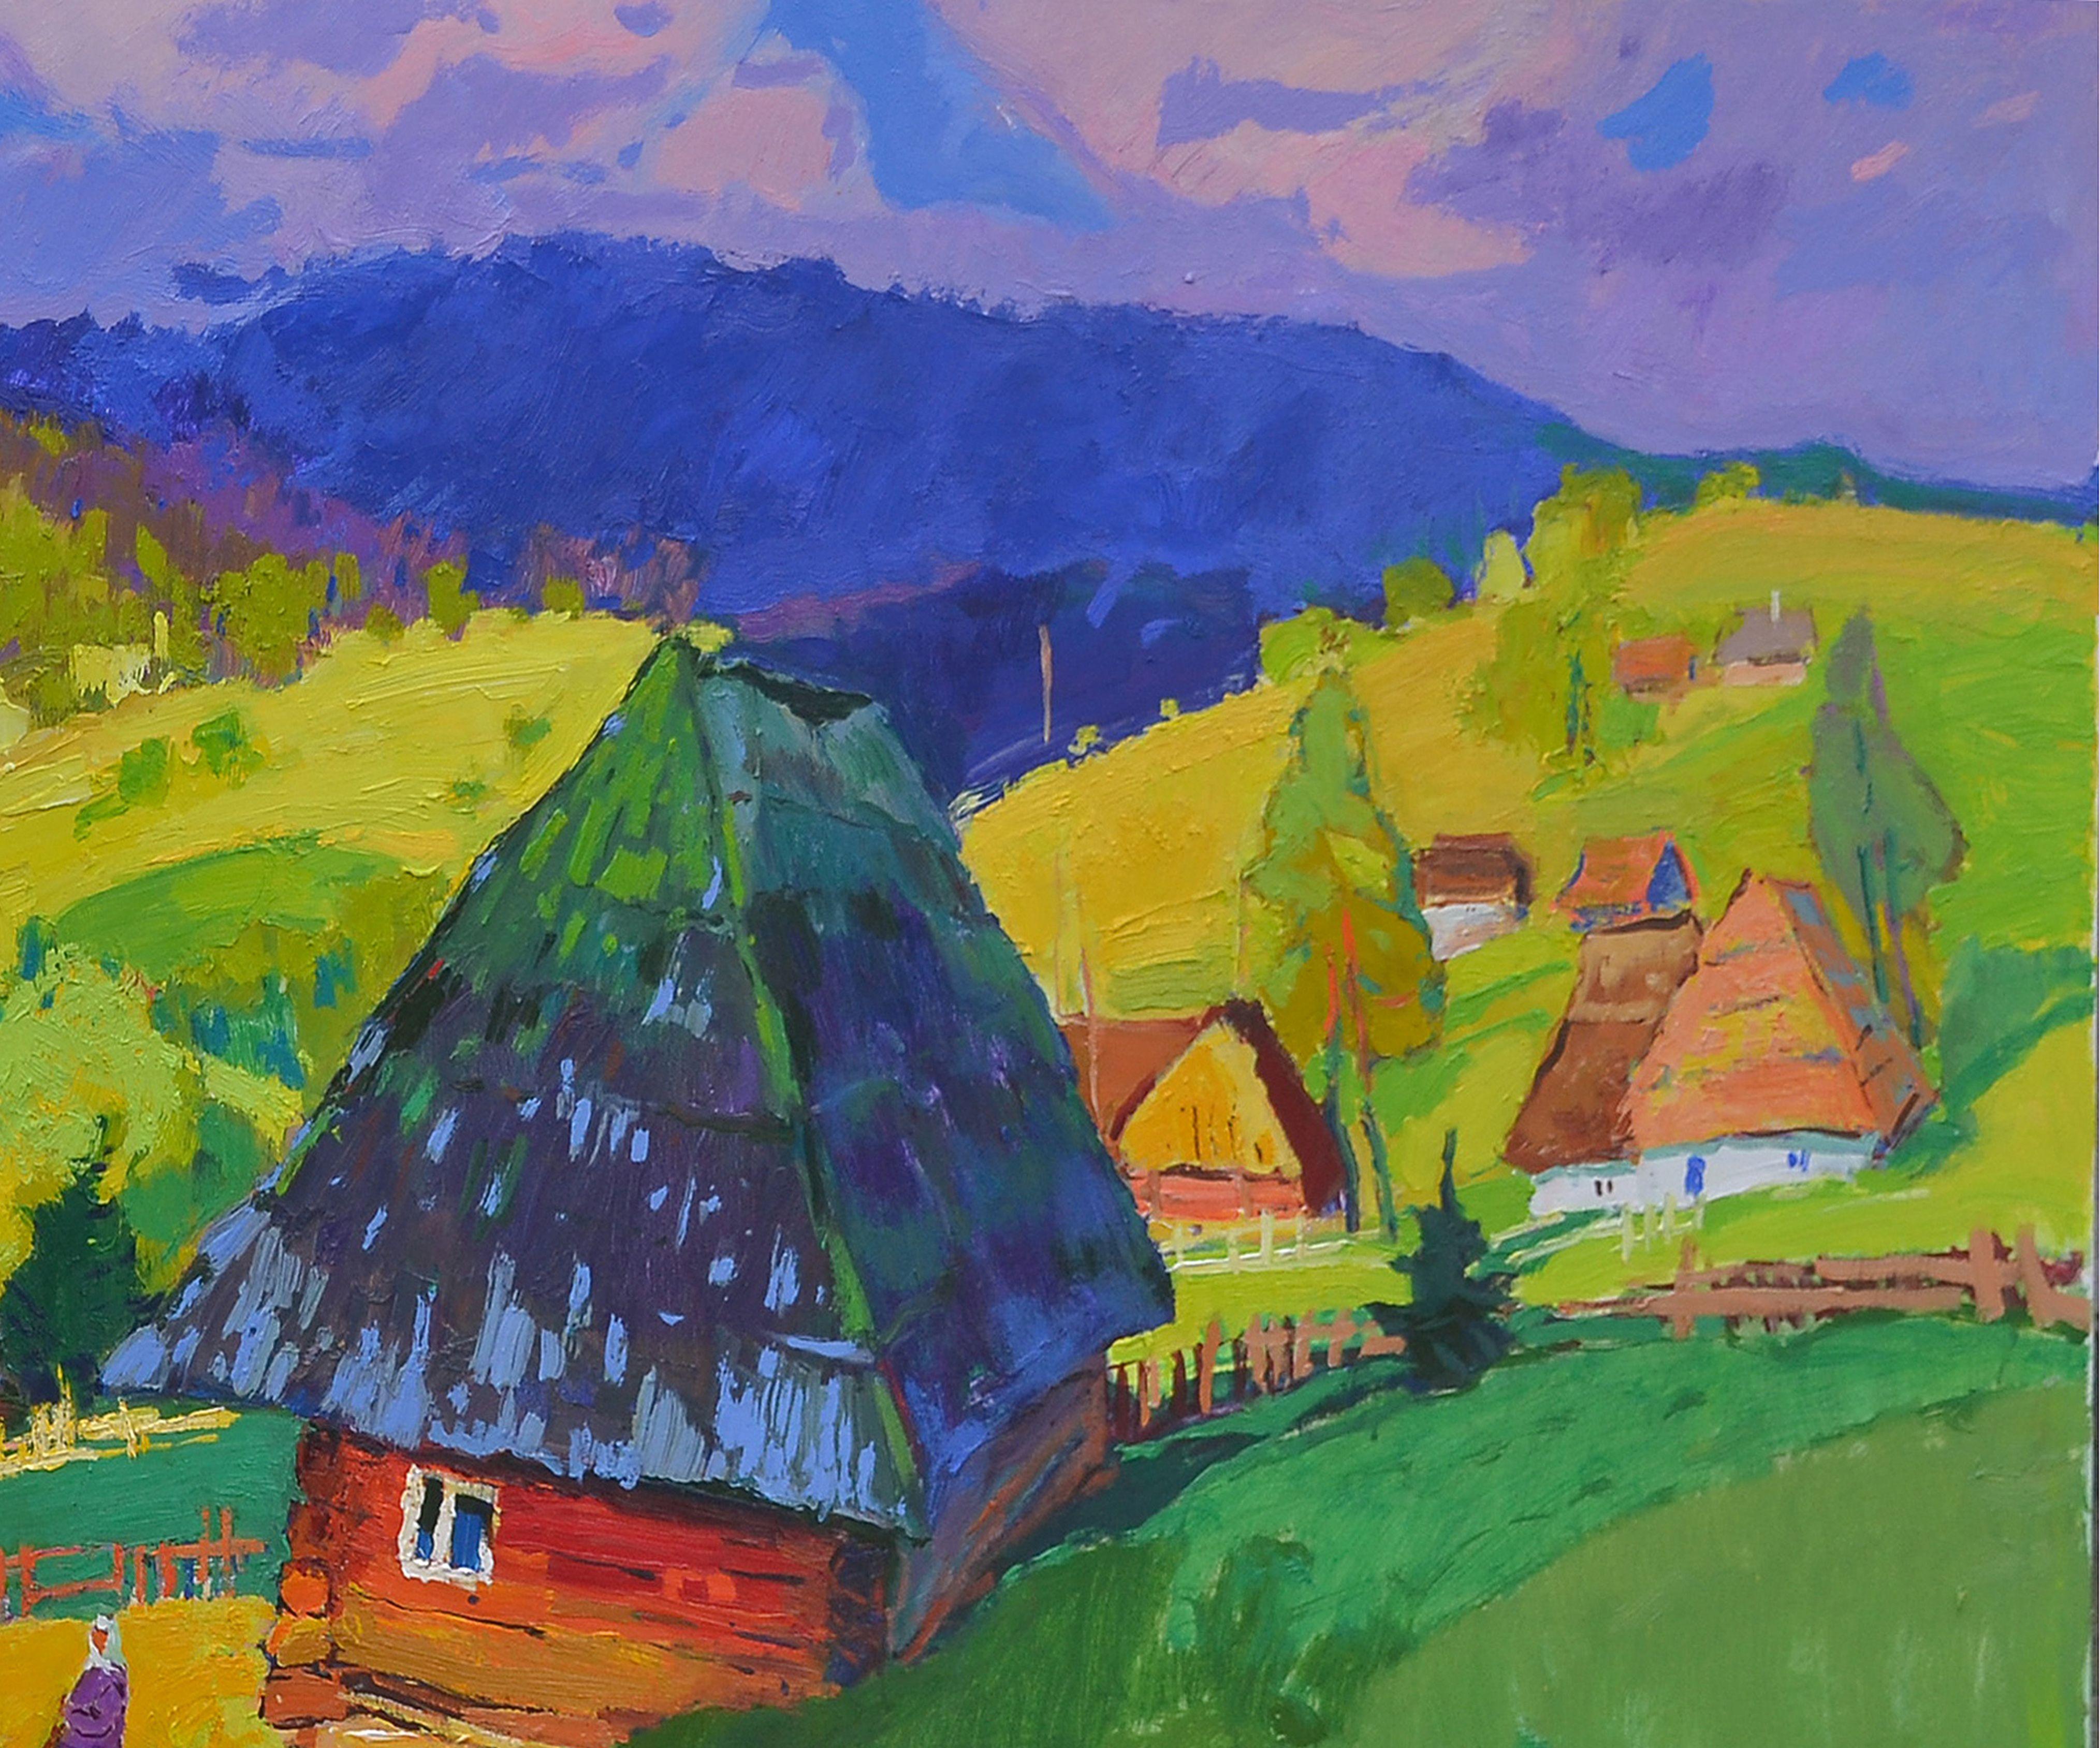 The house on the slopes, Peinture, Huile sur toile - Impressionnisme Painting par Alexander Shandor